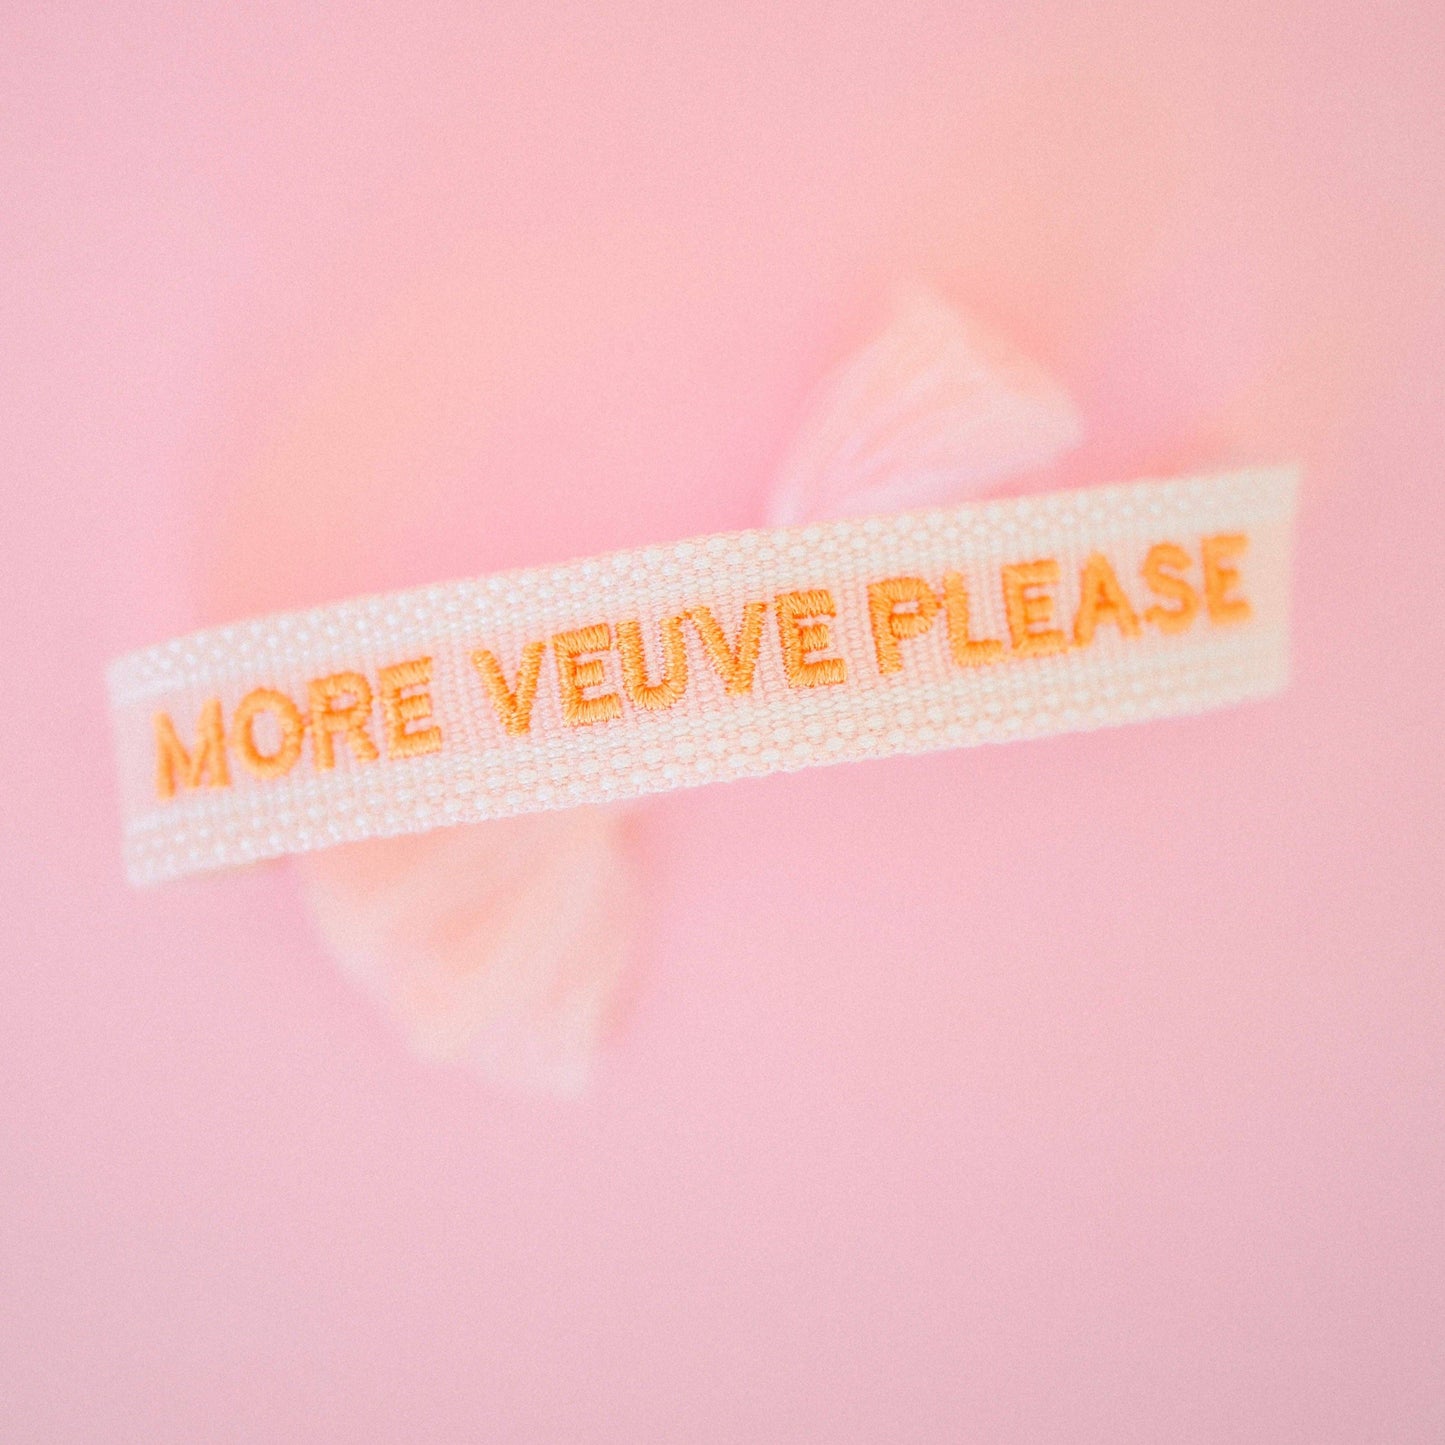 "More Veuve Please" Woven Bracelet